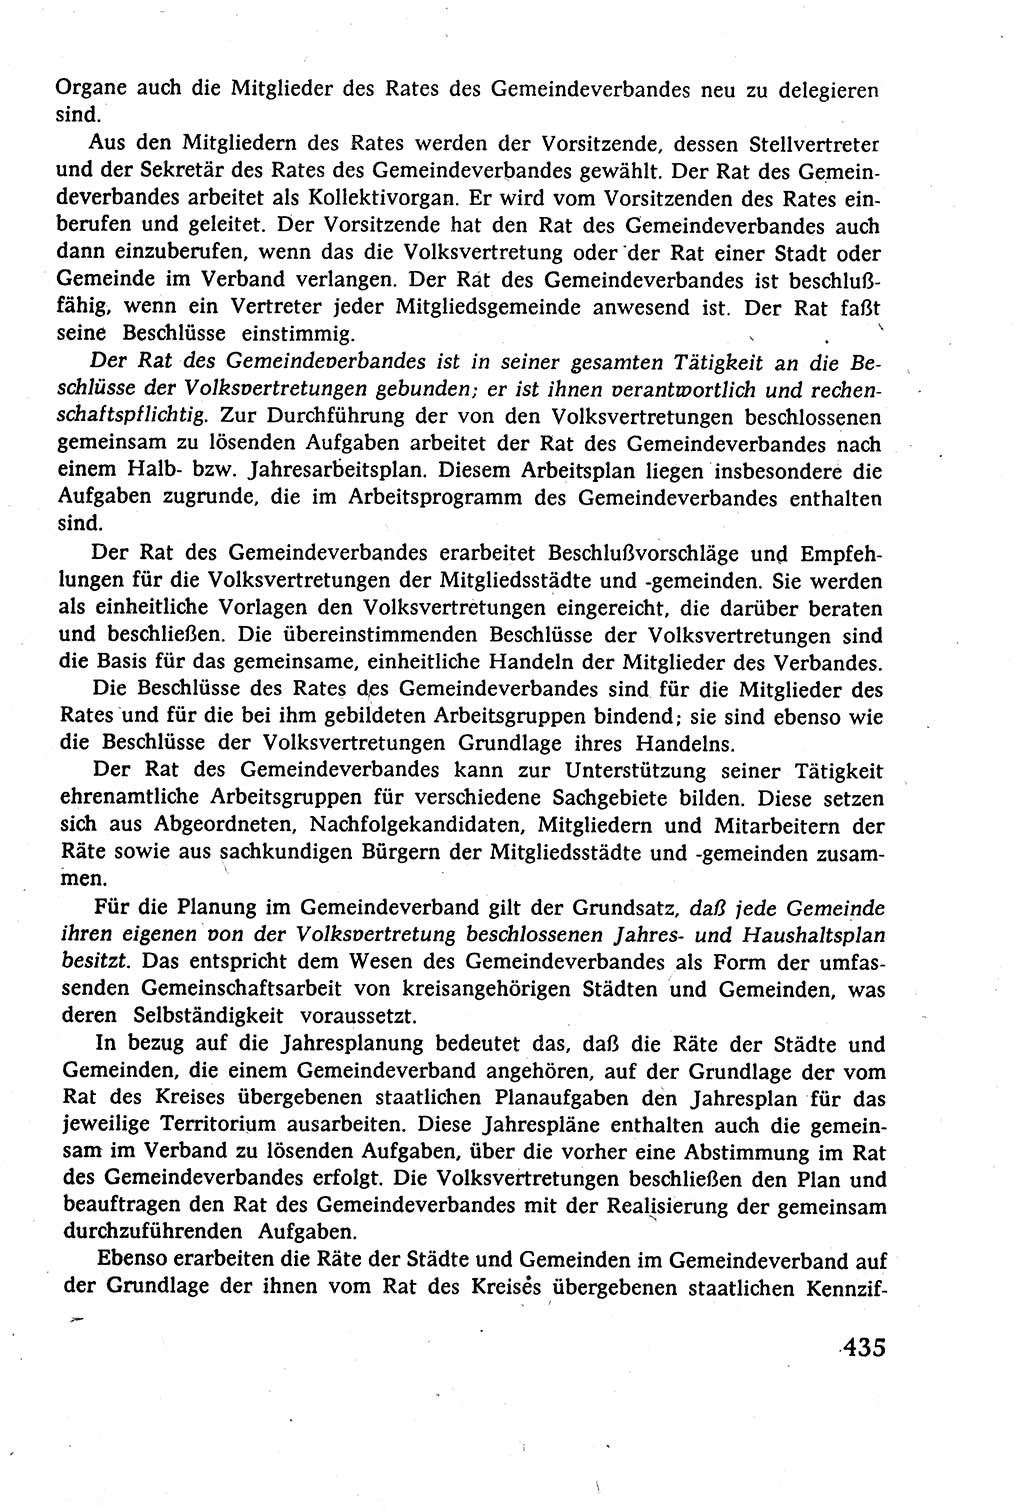 Staatsrecht der DDR (Deutsche Demokratische Republik), Lehrbuch 1977, Seite 435 (St.-R. DDR Lb. 1977, S. 435)